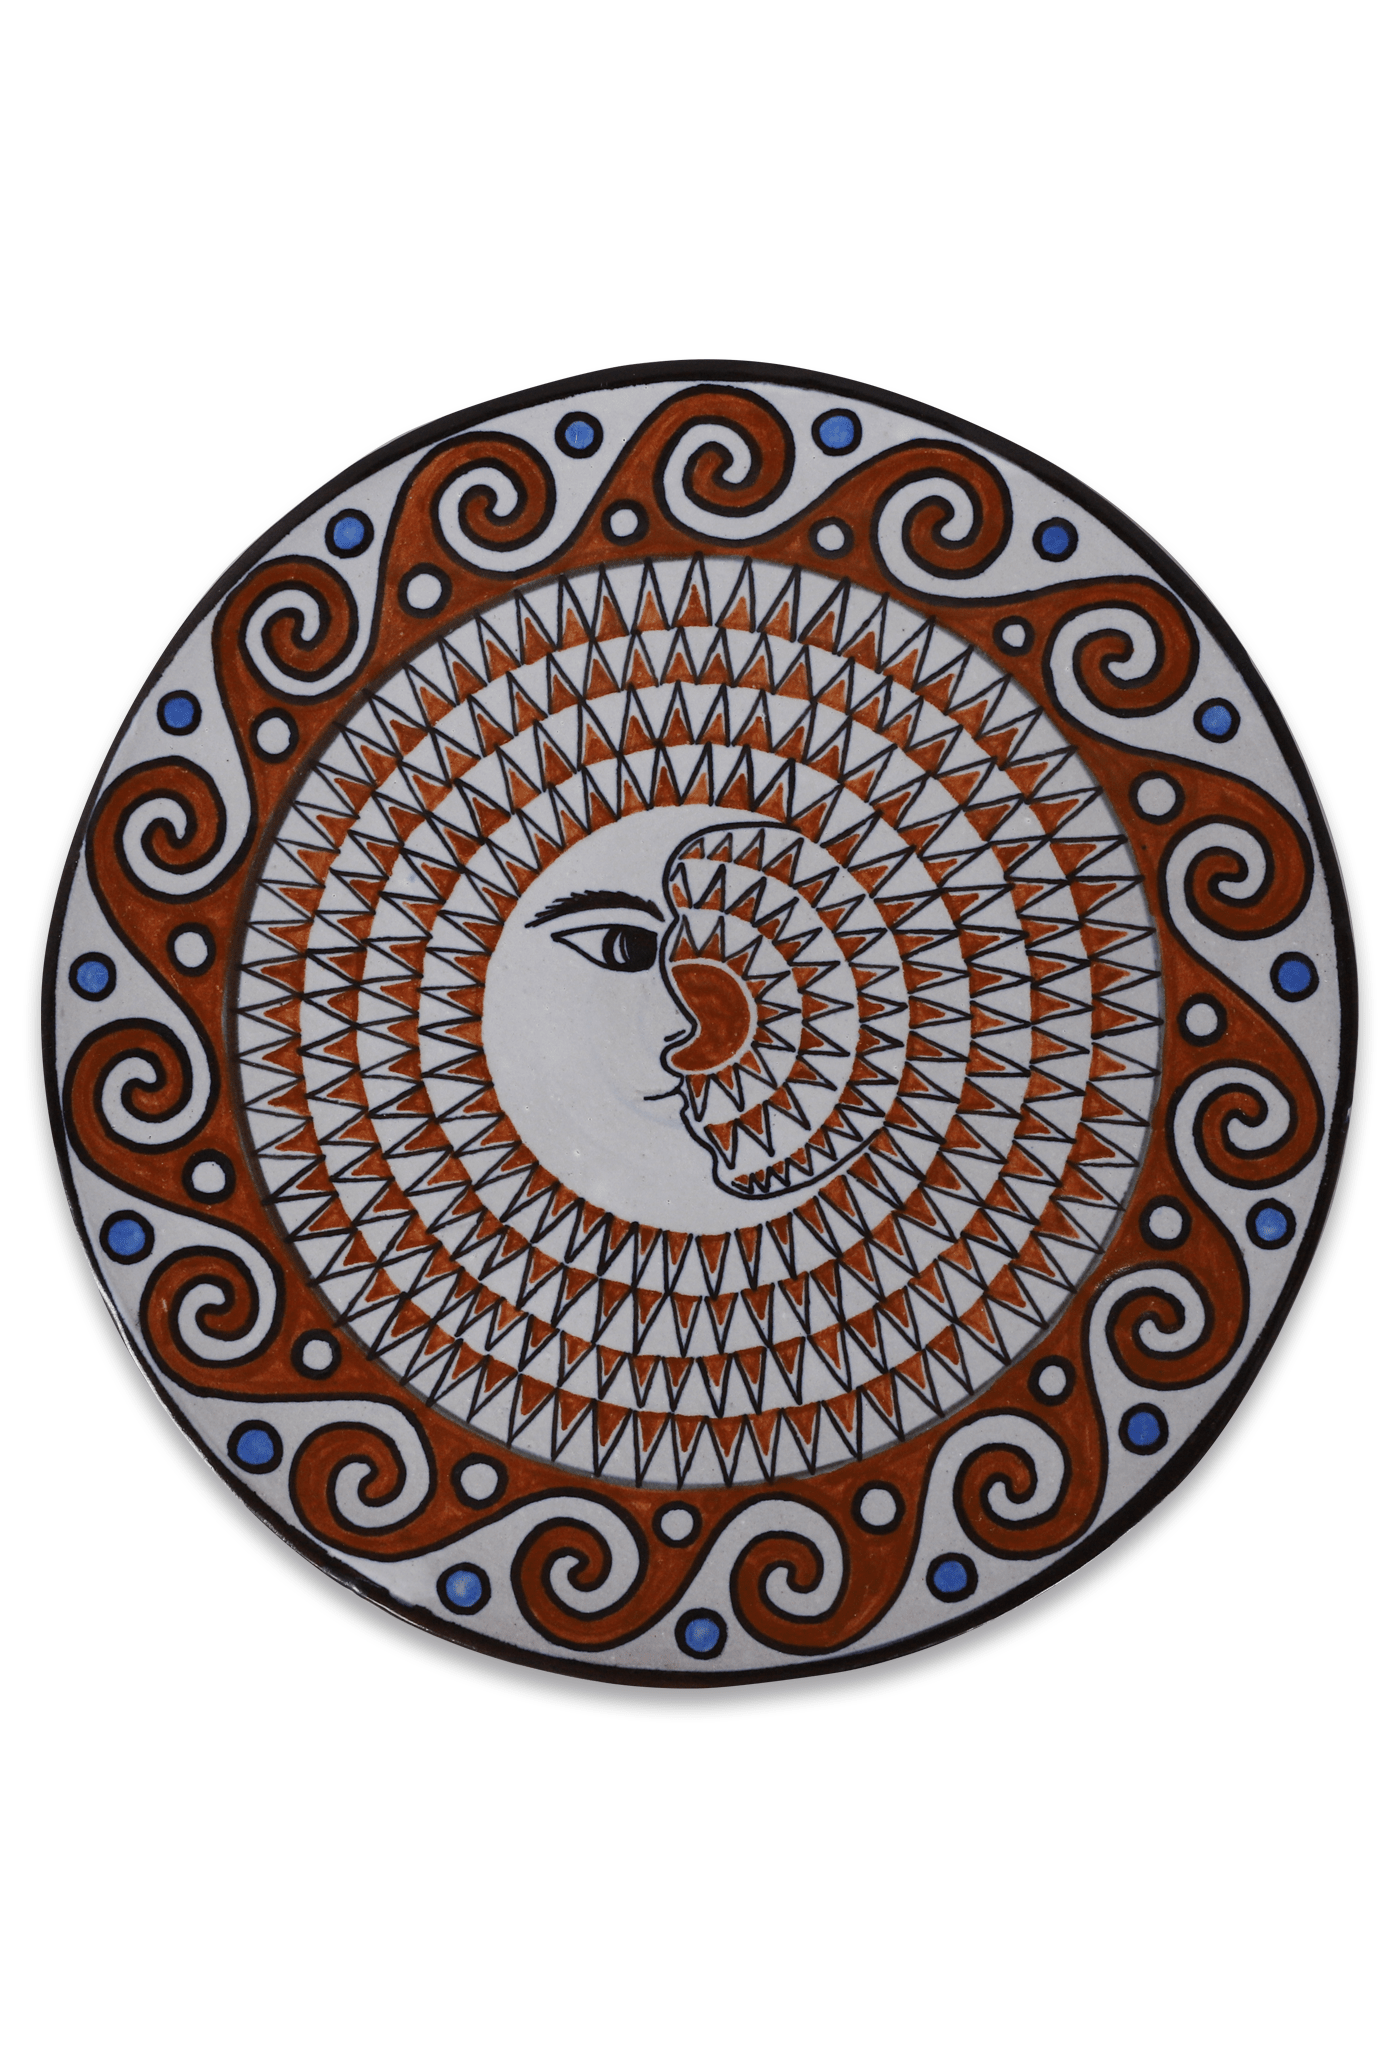 Guadalupe Ceramics Plate La Luna Plate